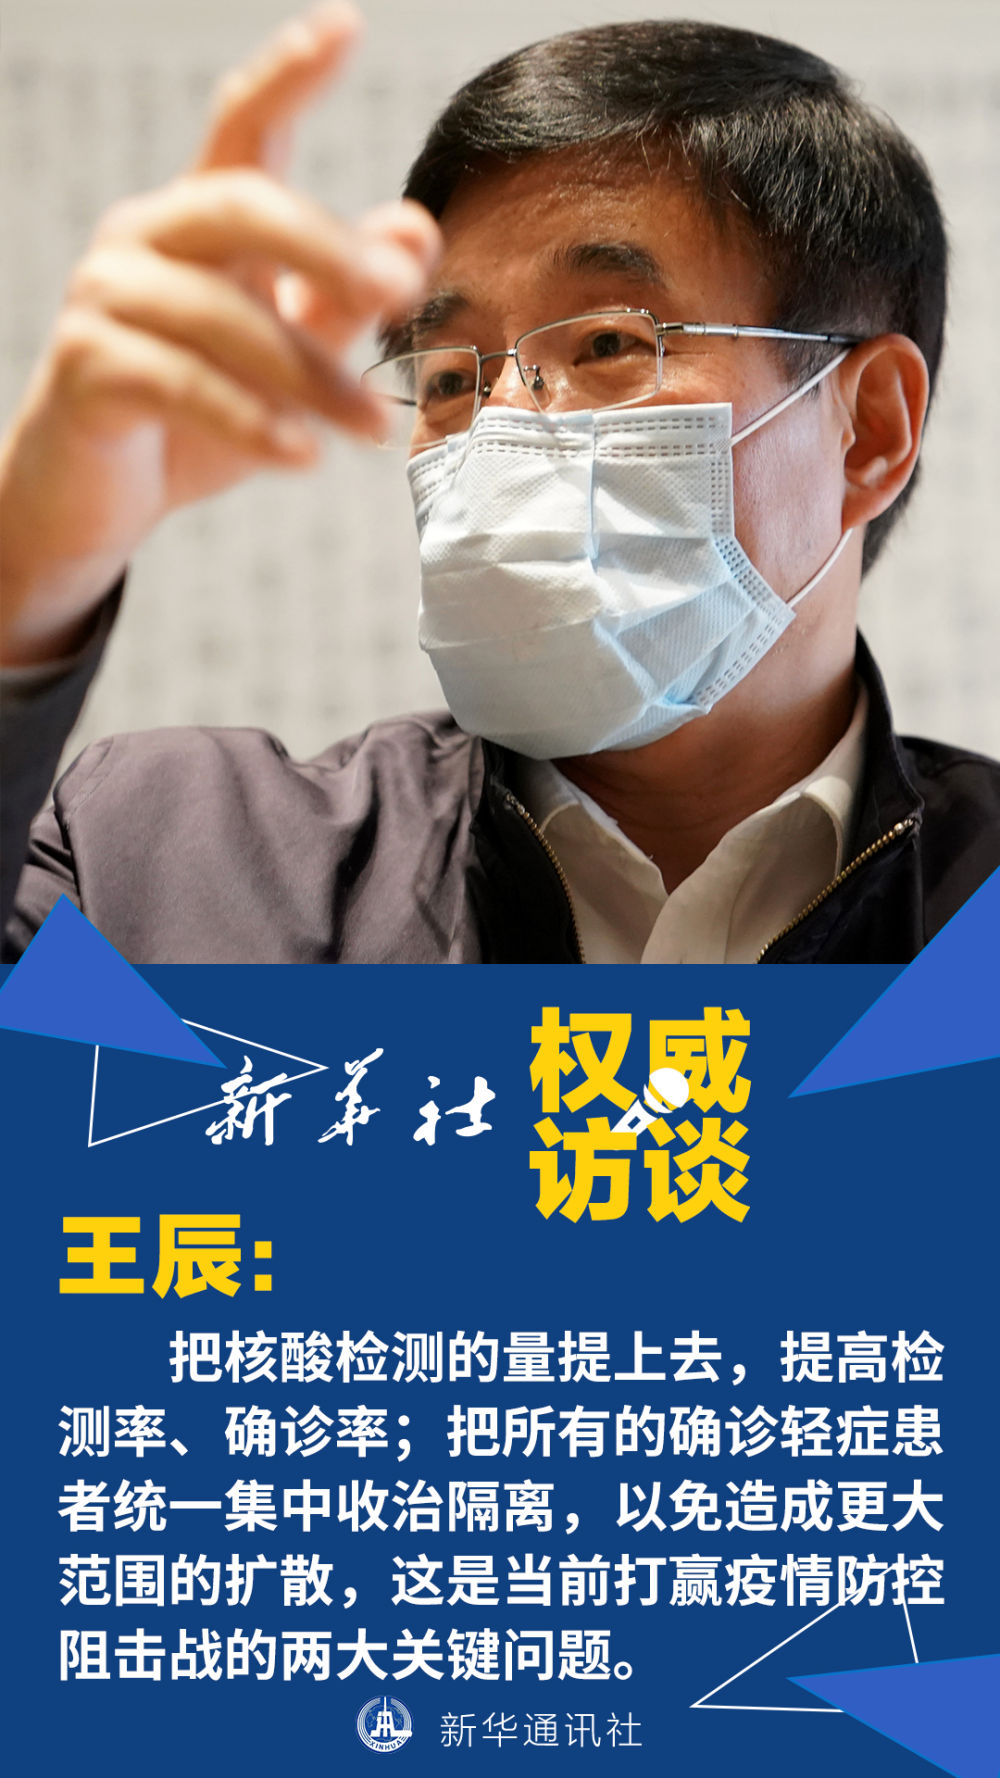 关键时期的关键之举——中国工程院副院长、呼吸与危重症医学专家王辰回应武汉疫情防控焦点问题